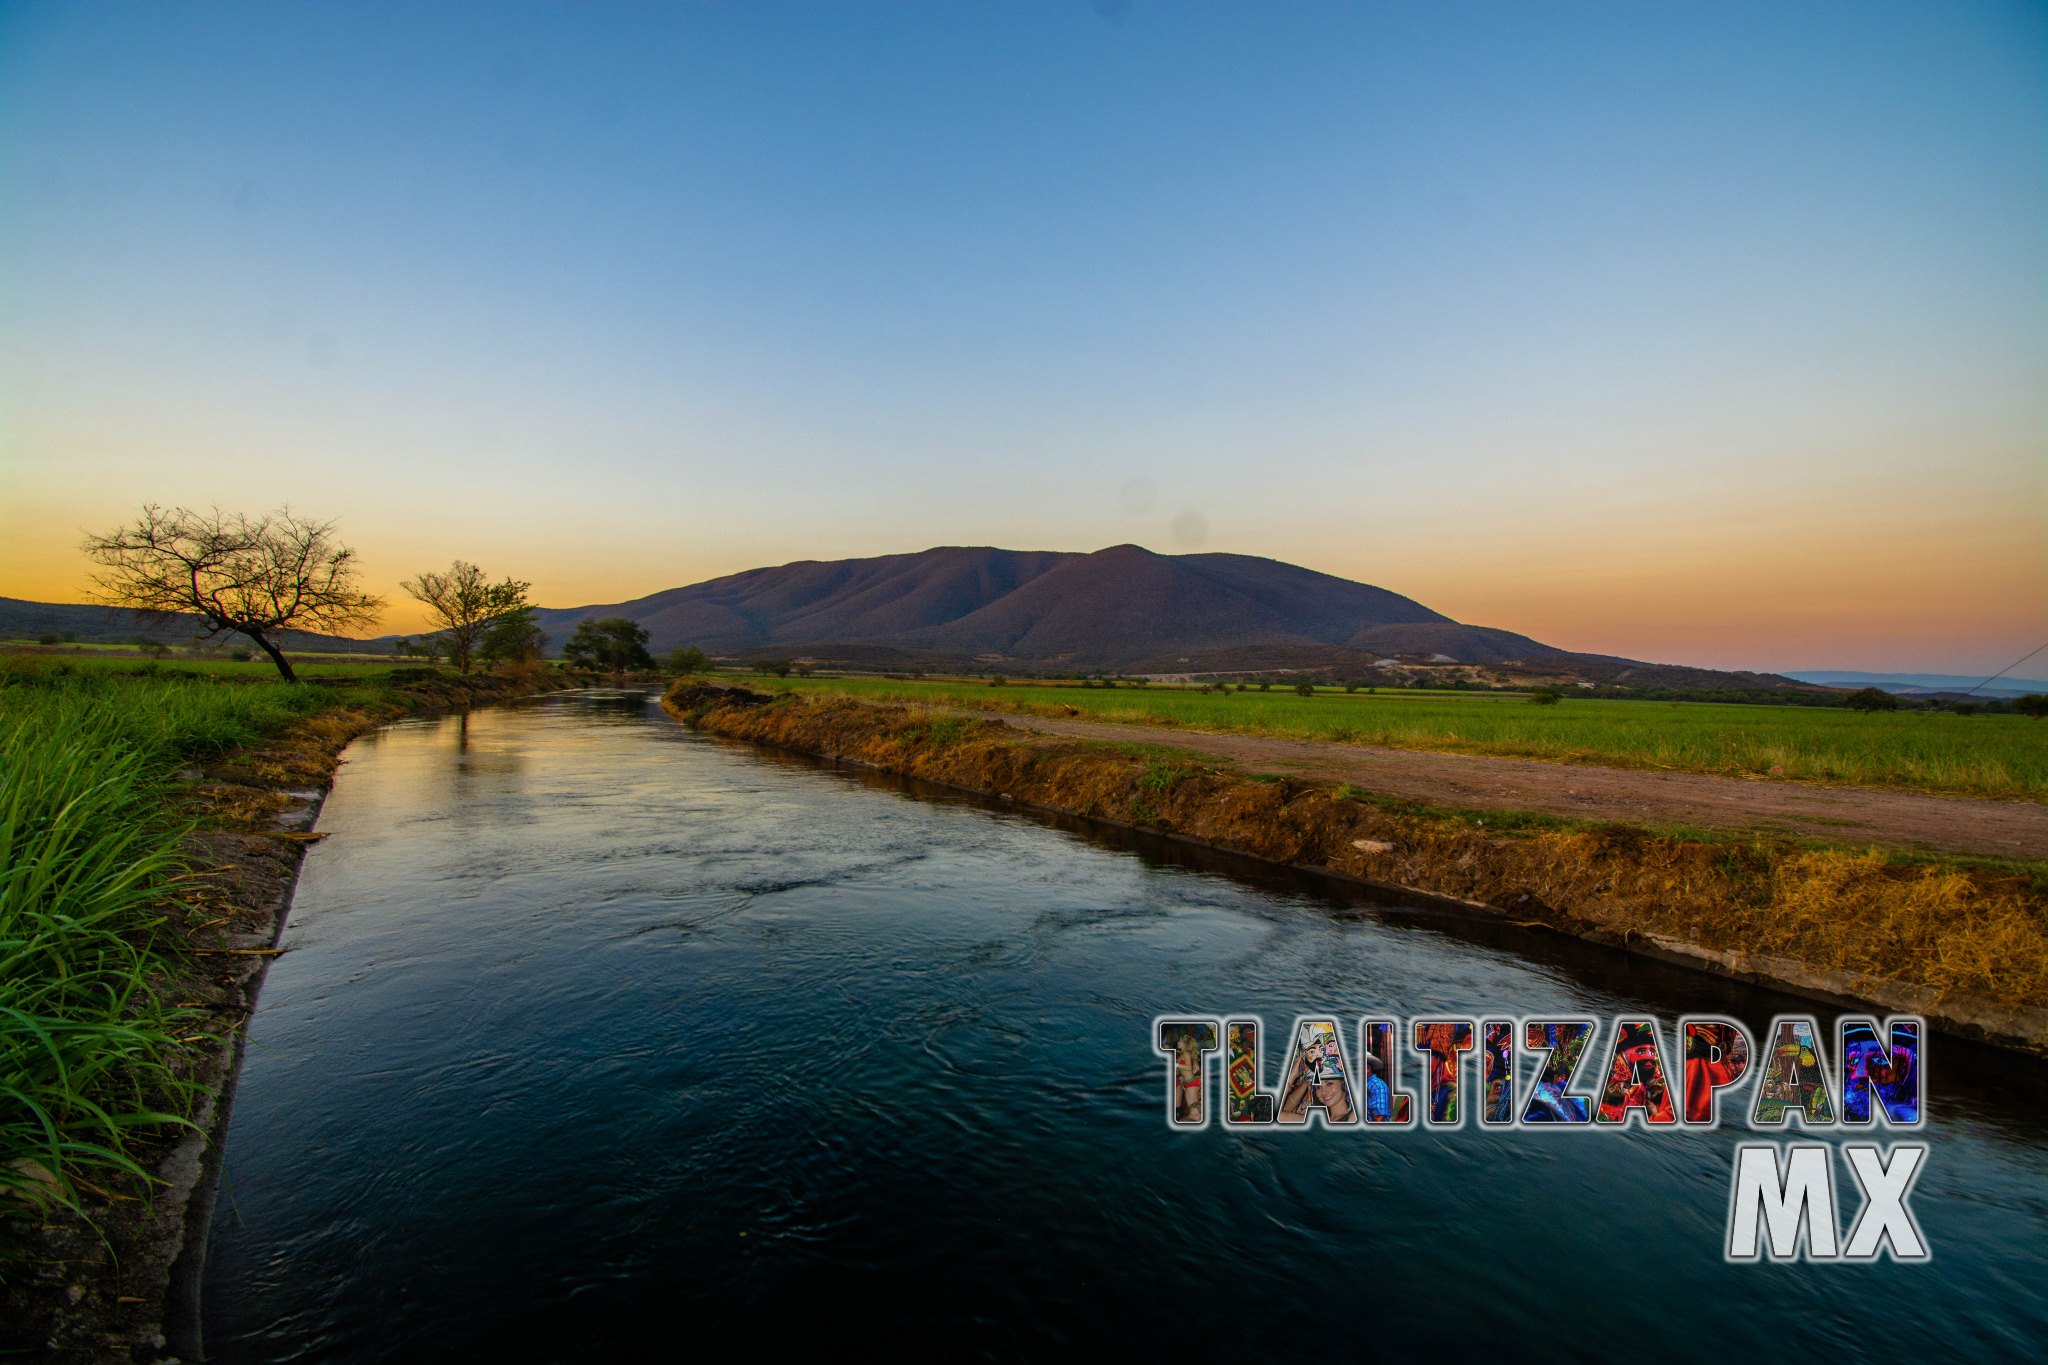 El canal de riego en Tlaltizapán, Morelos 07 de Marzo del 2019 | Colecciones multimedia | Tlaltizapan.mx